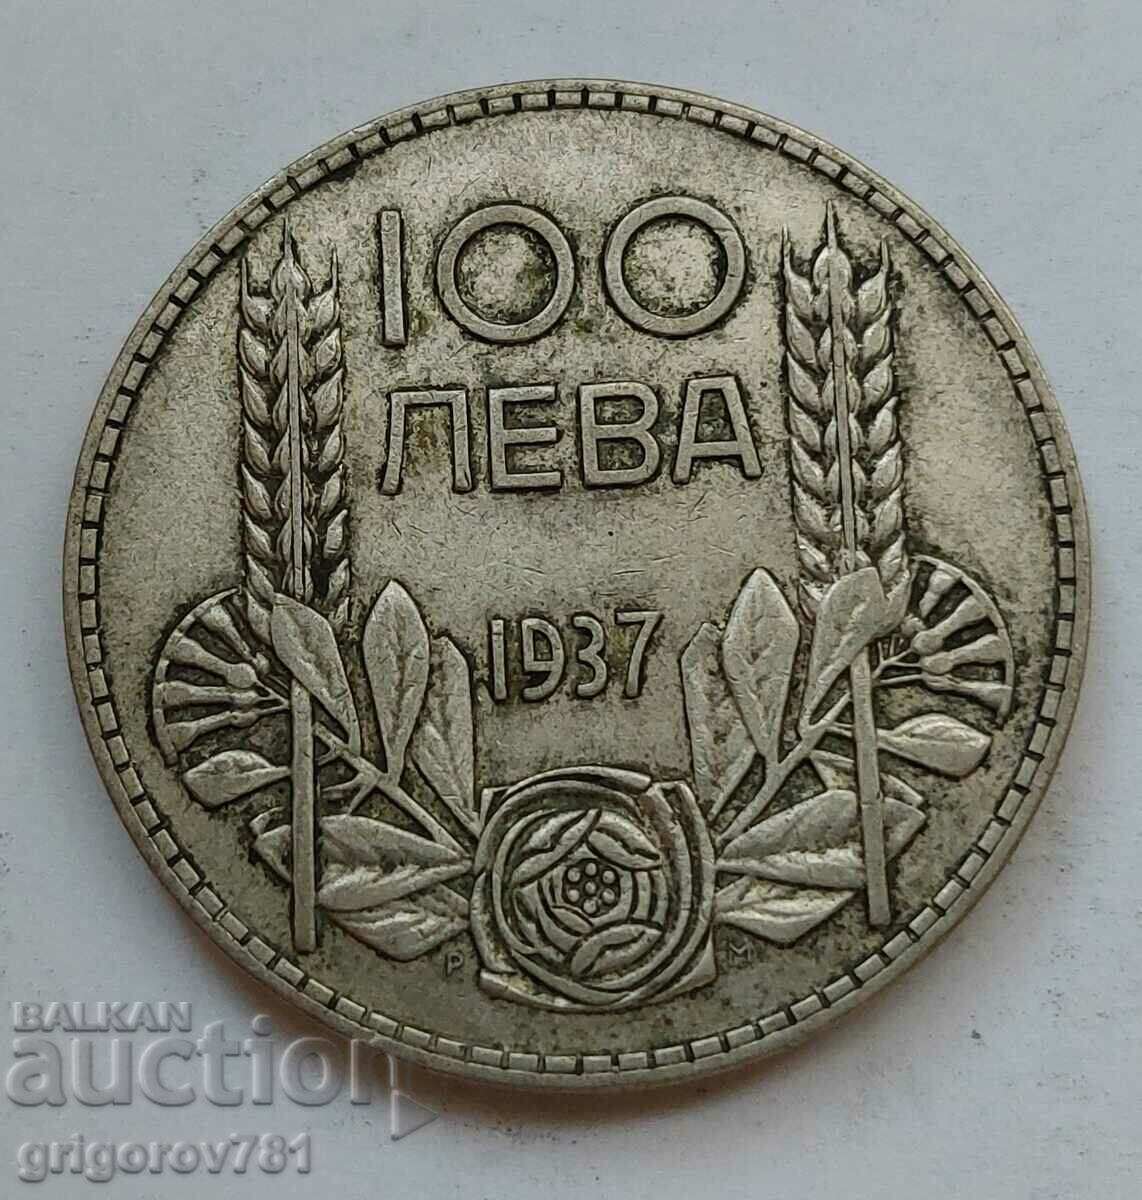 100 leva silver Bulgaria 1937 - silver coin #148